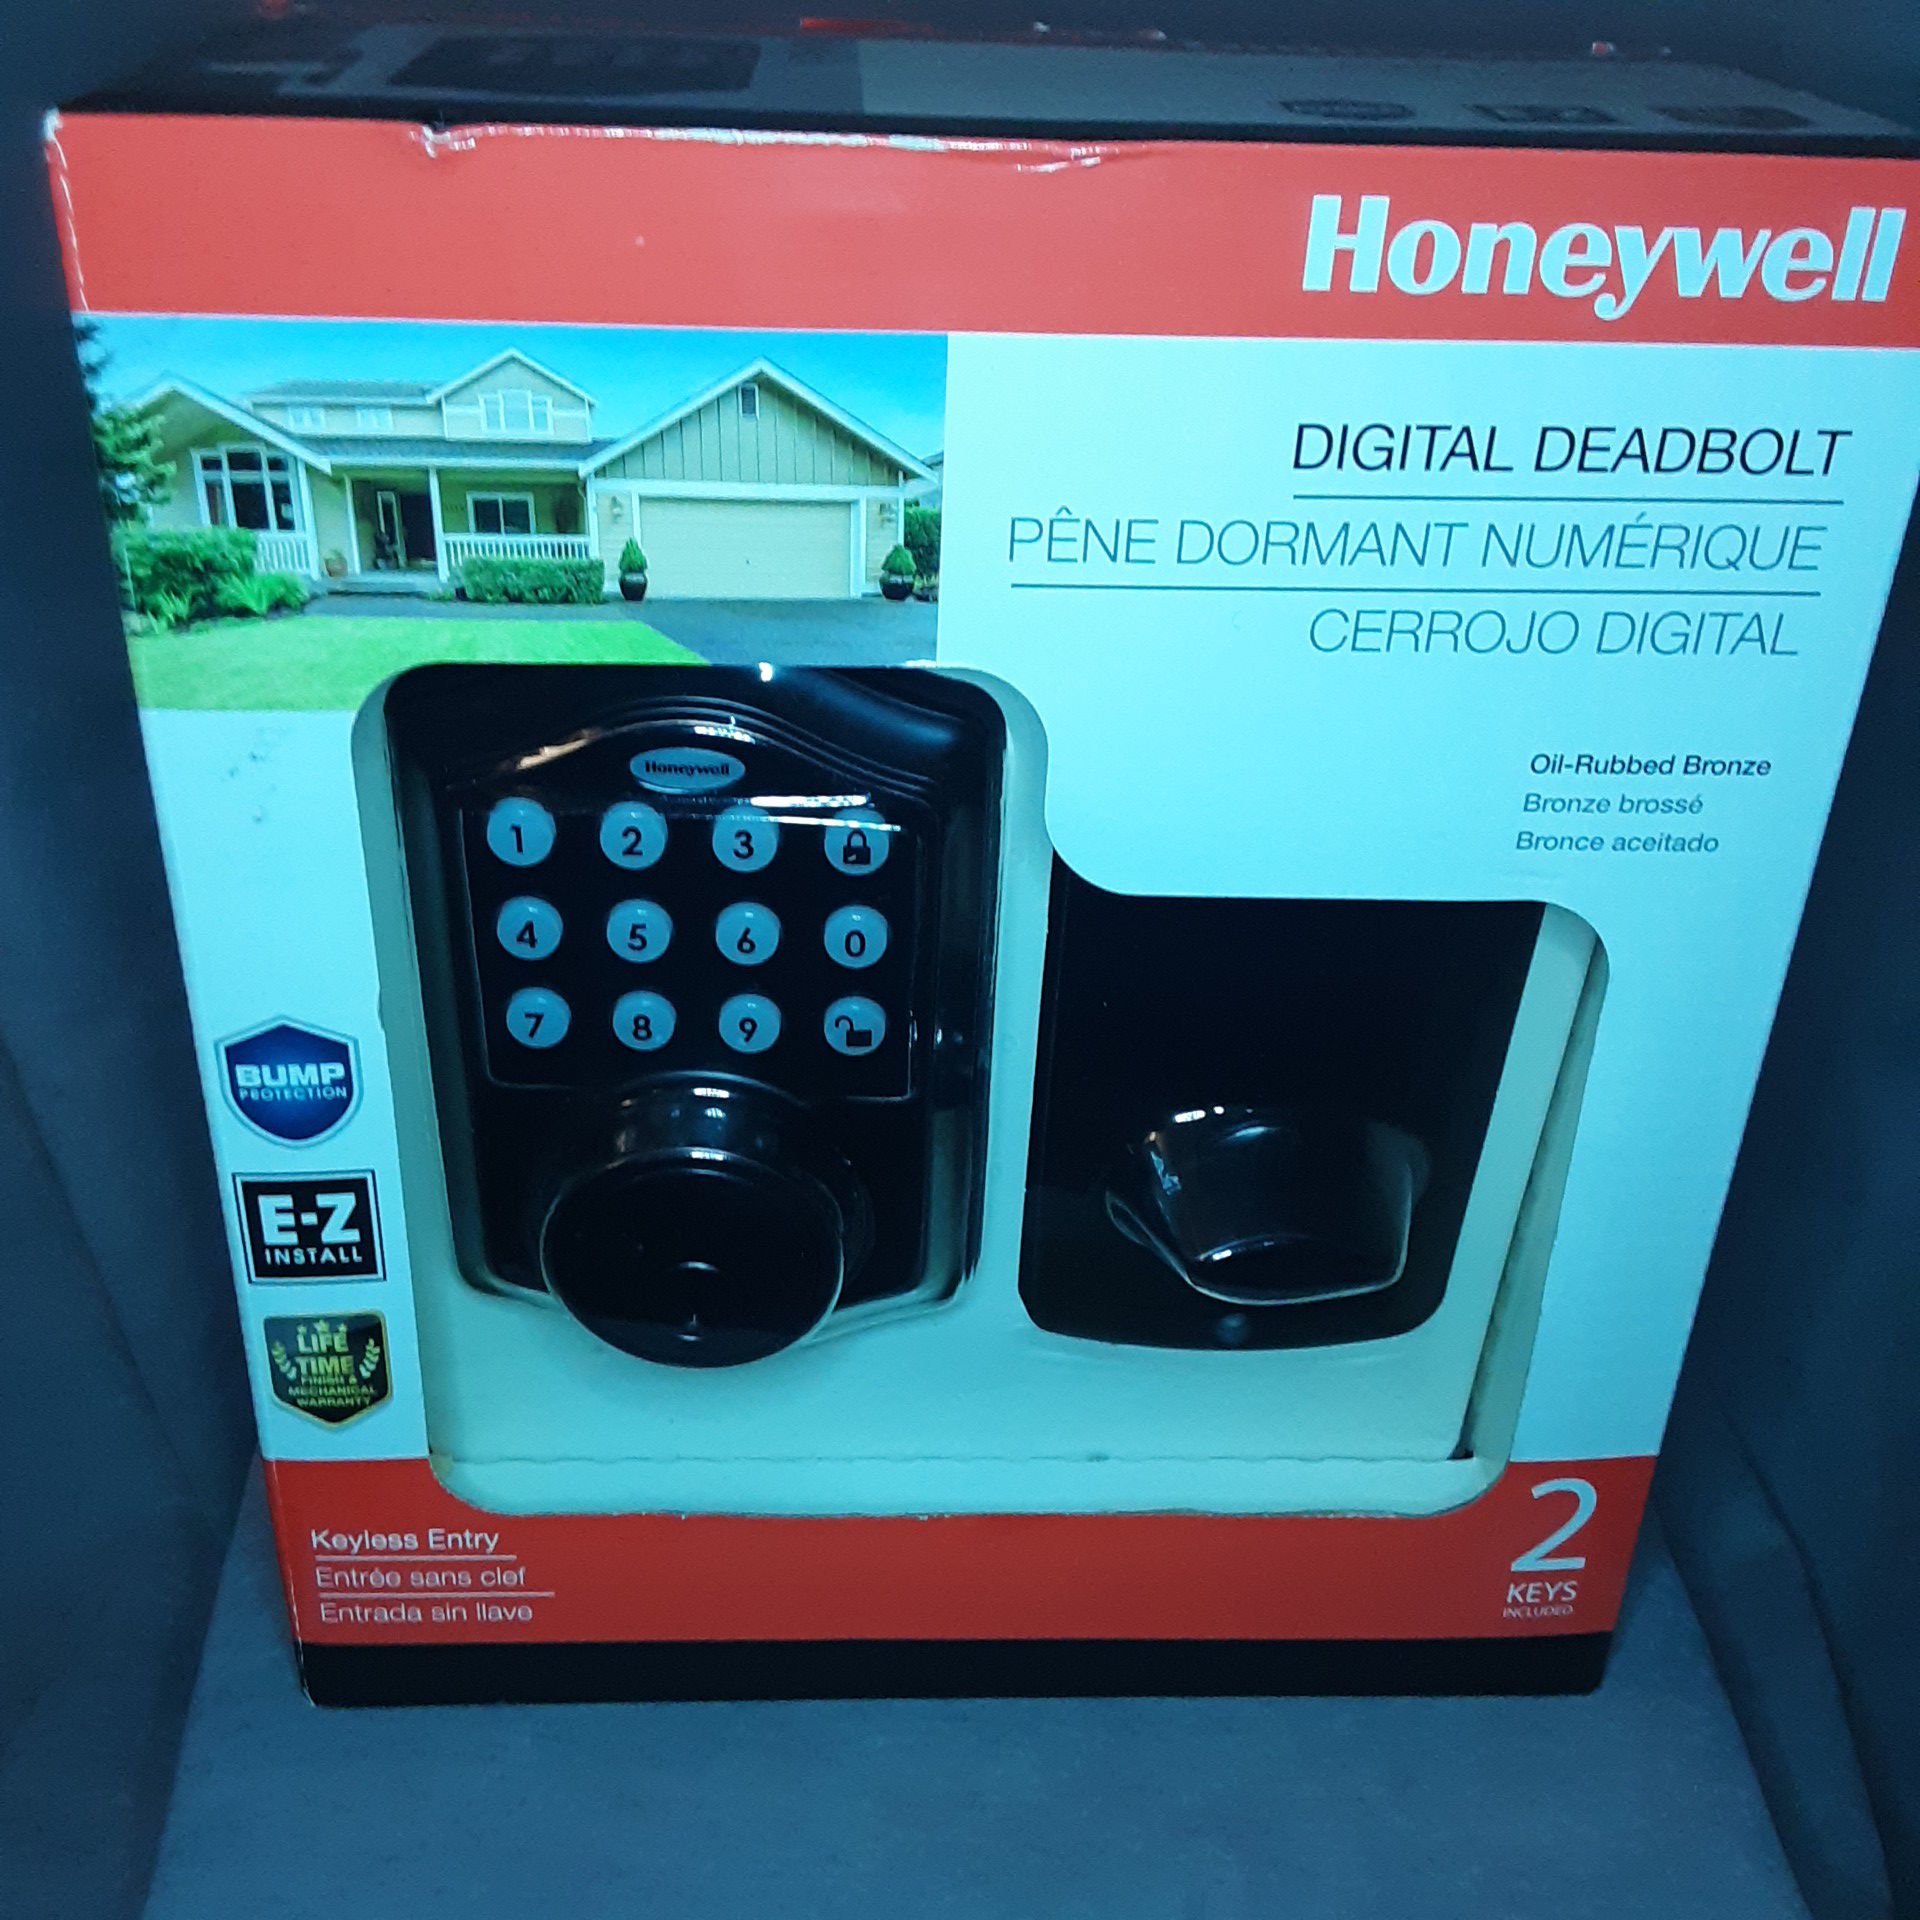 Honeywell Digital Deadbolt : Oil-Rubbed Bronze Keyless Entry / 2 Keys - 8712409